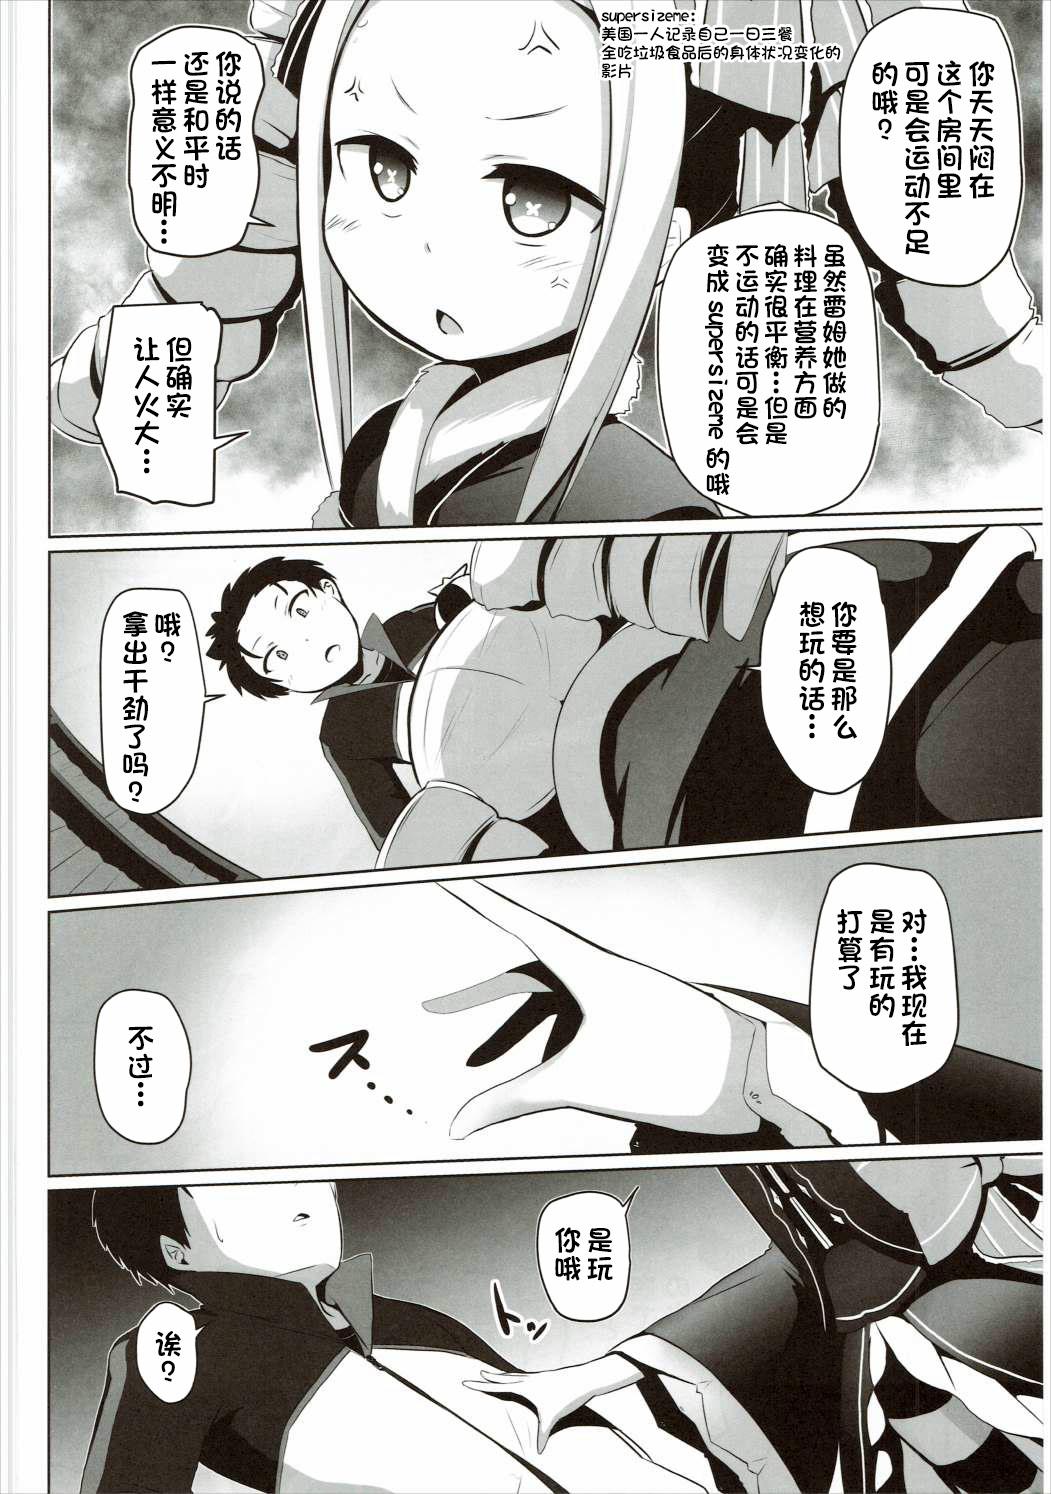 Little Omae Namaiki kashira!! - Re zero kara hajimeru isekai seikatsu Students - Page 3